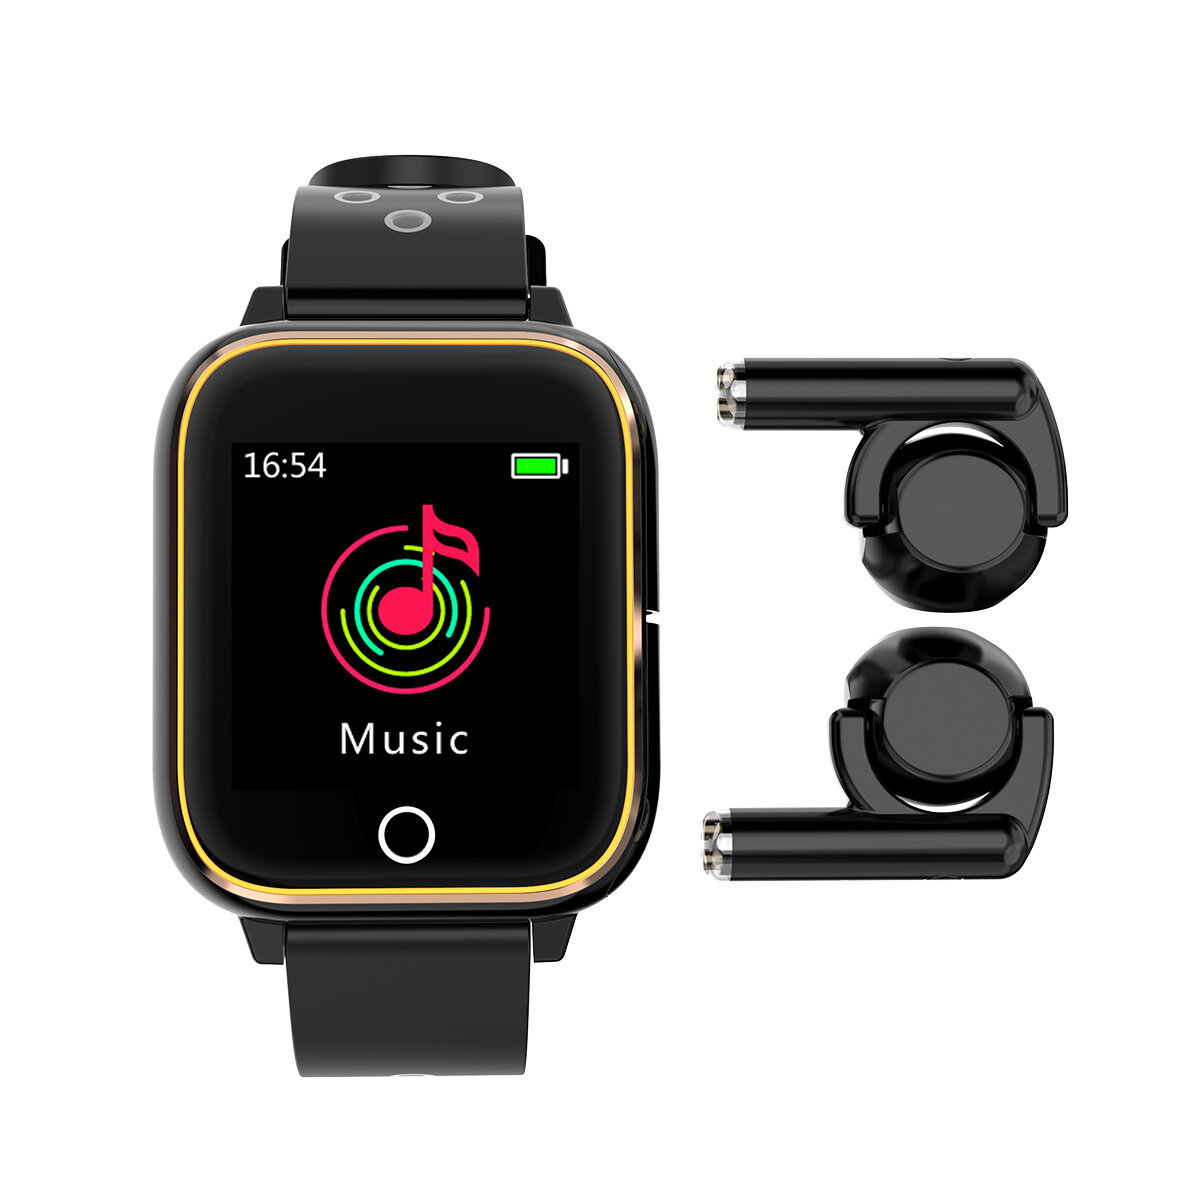 M6 3 en 1 Smart Watch TWS bluetooth Auricular 1.4 pulgadas Reloj multifunción Reproductor de MP3 Smart Banda con micrófo